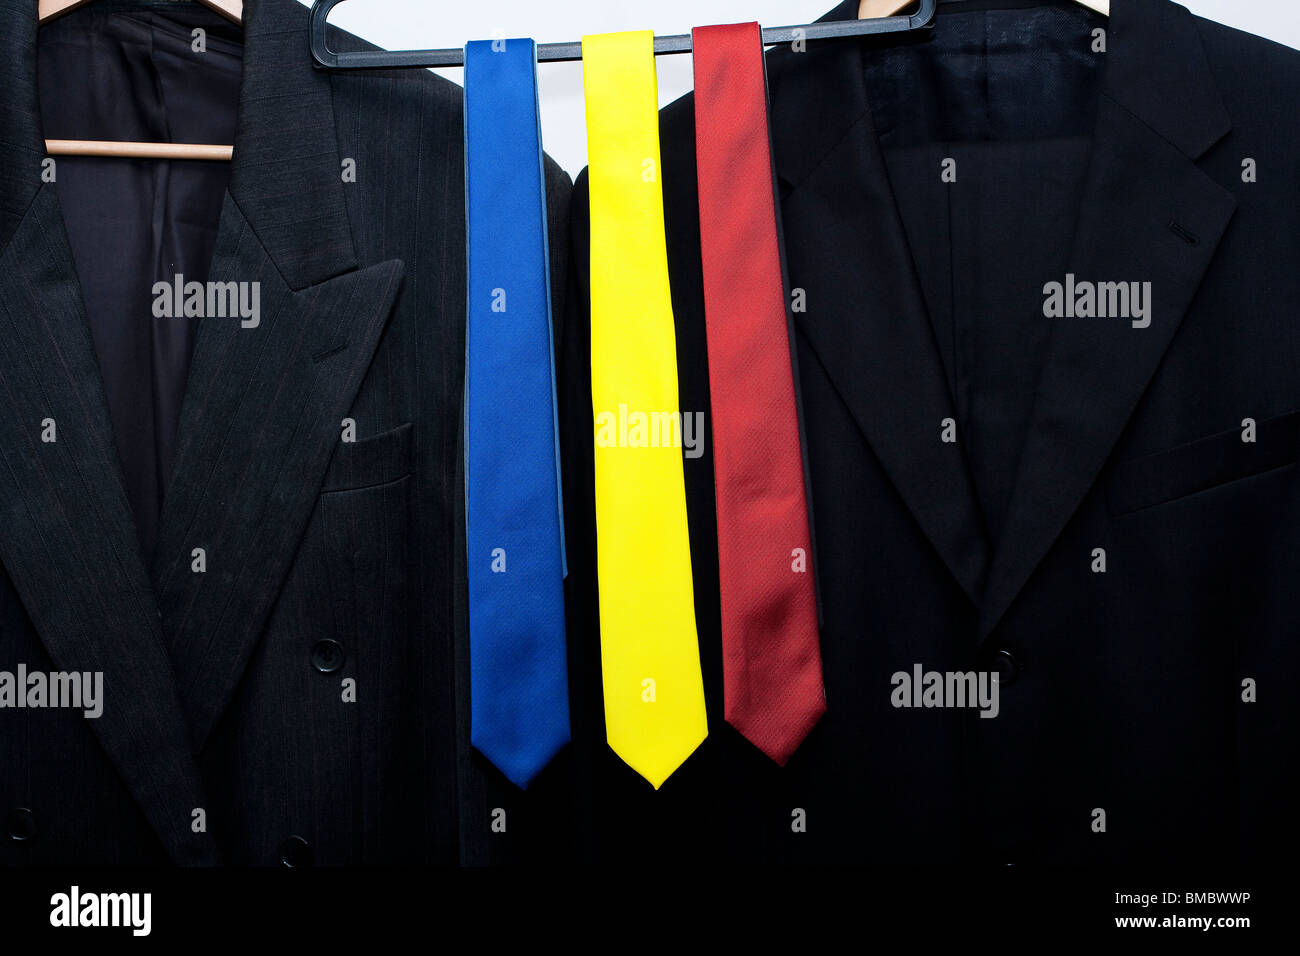 rote, blaue und gelbe Krawatten auf einer Schiene in einem Geschäft. als nächstes passen Sie Jacken. Metapher für die britische allgemeine Wahl 2010 Stockfoto